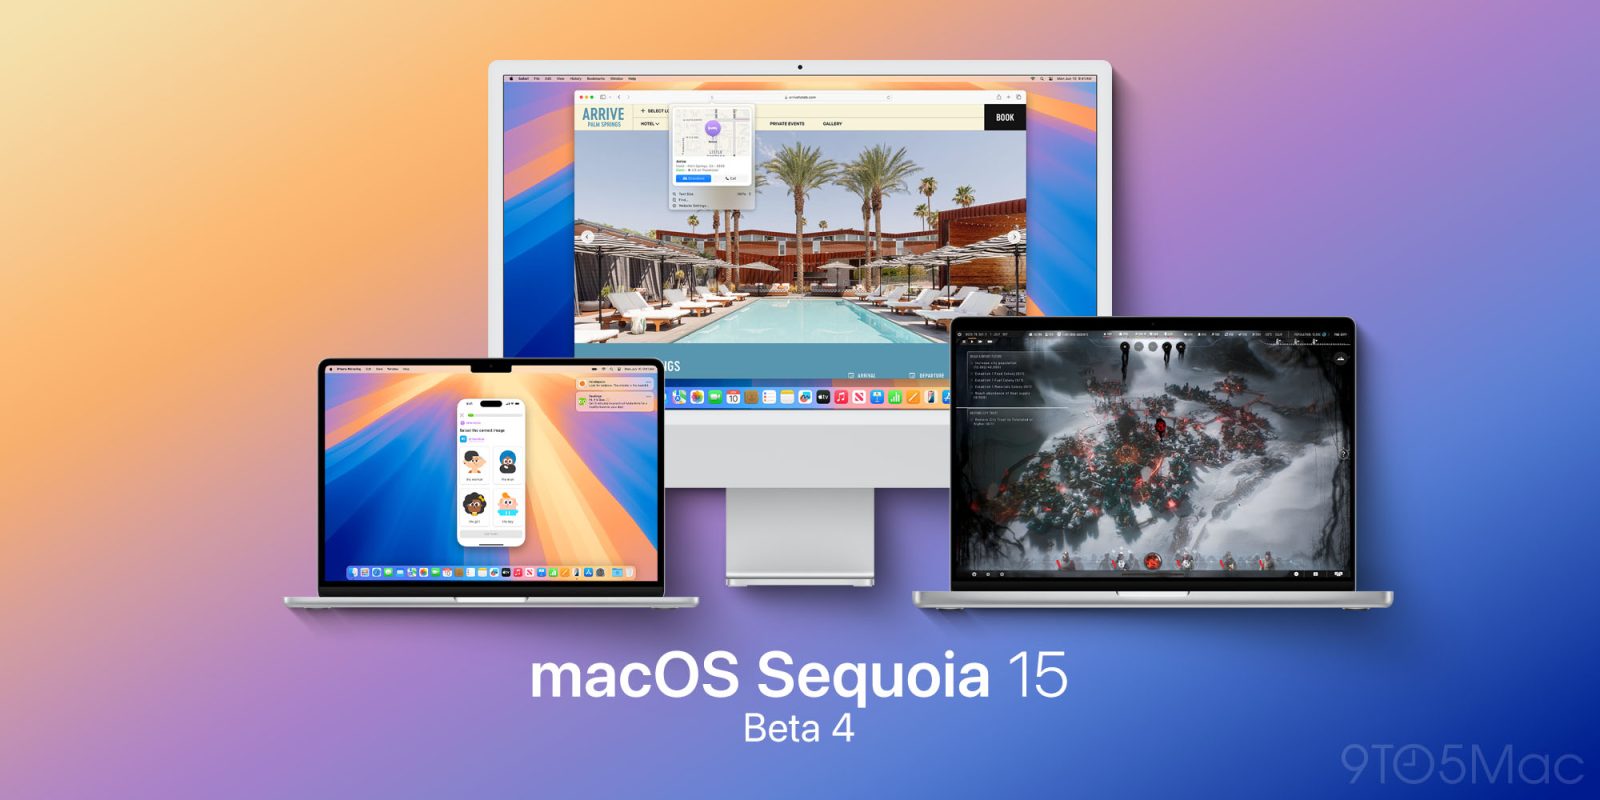 macOS Sequoia beta 4